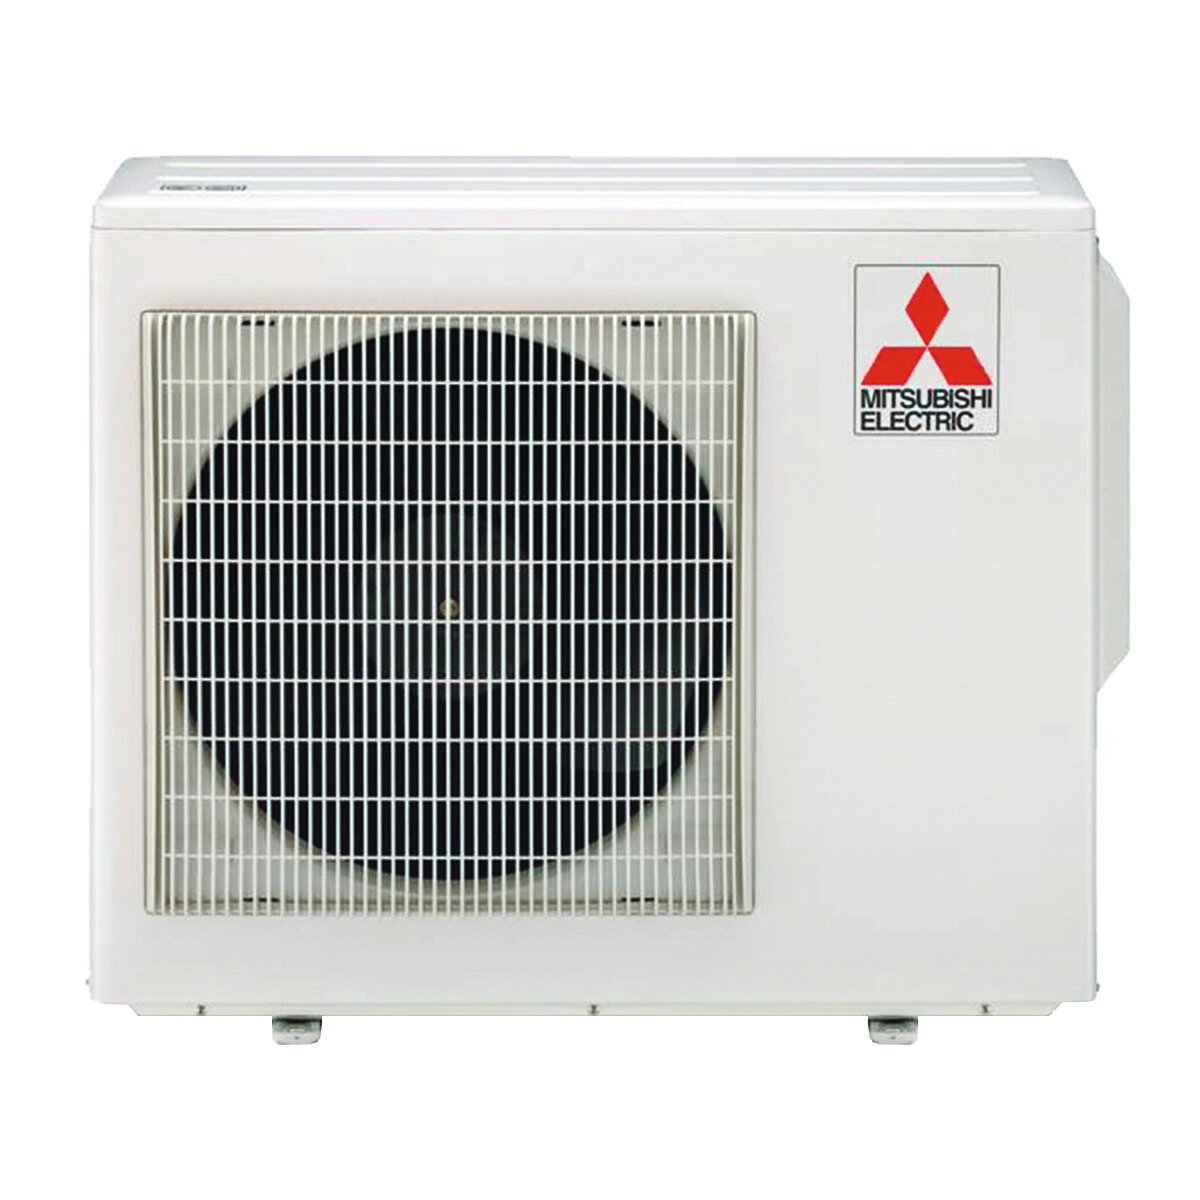 Mitsubishi Electric Klimaanlage AY-Serie Dual Split 9000+18000 BTU Inverter A++ WLAN-Außeneinheit 5,4 kW